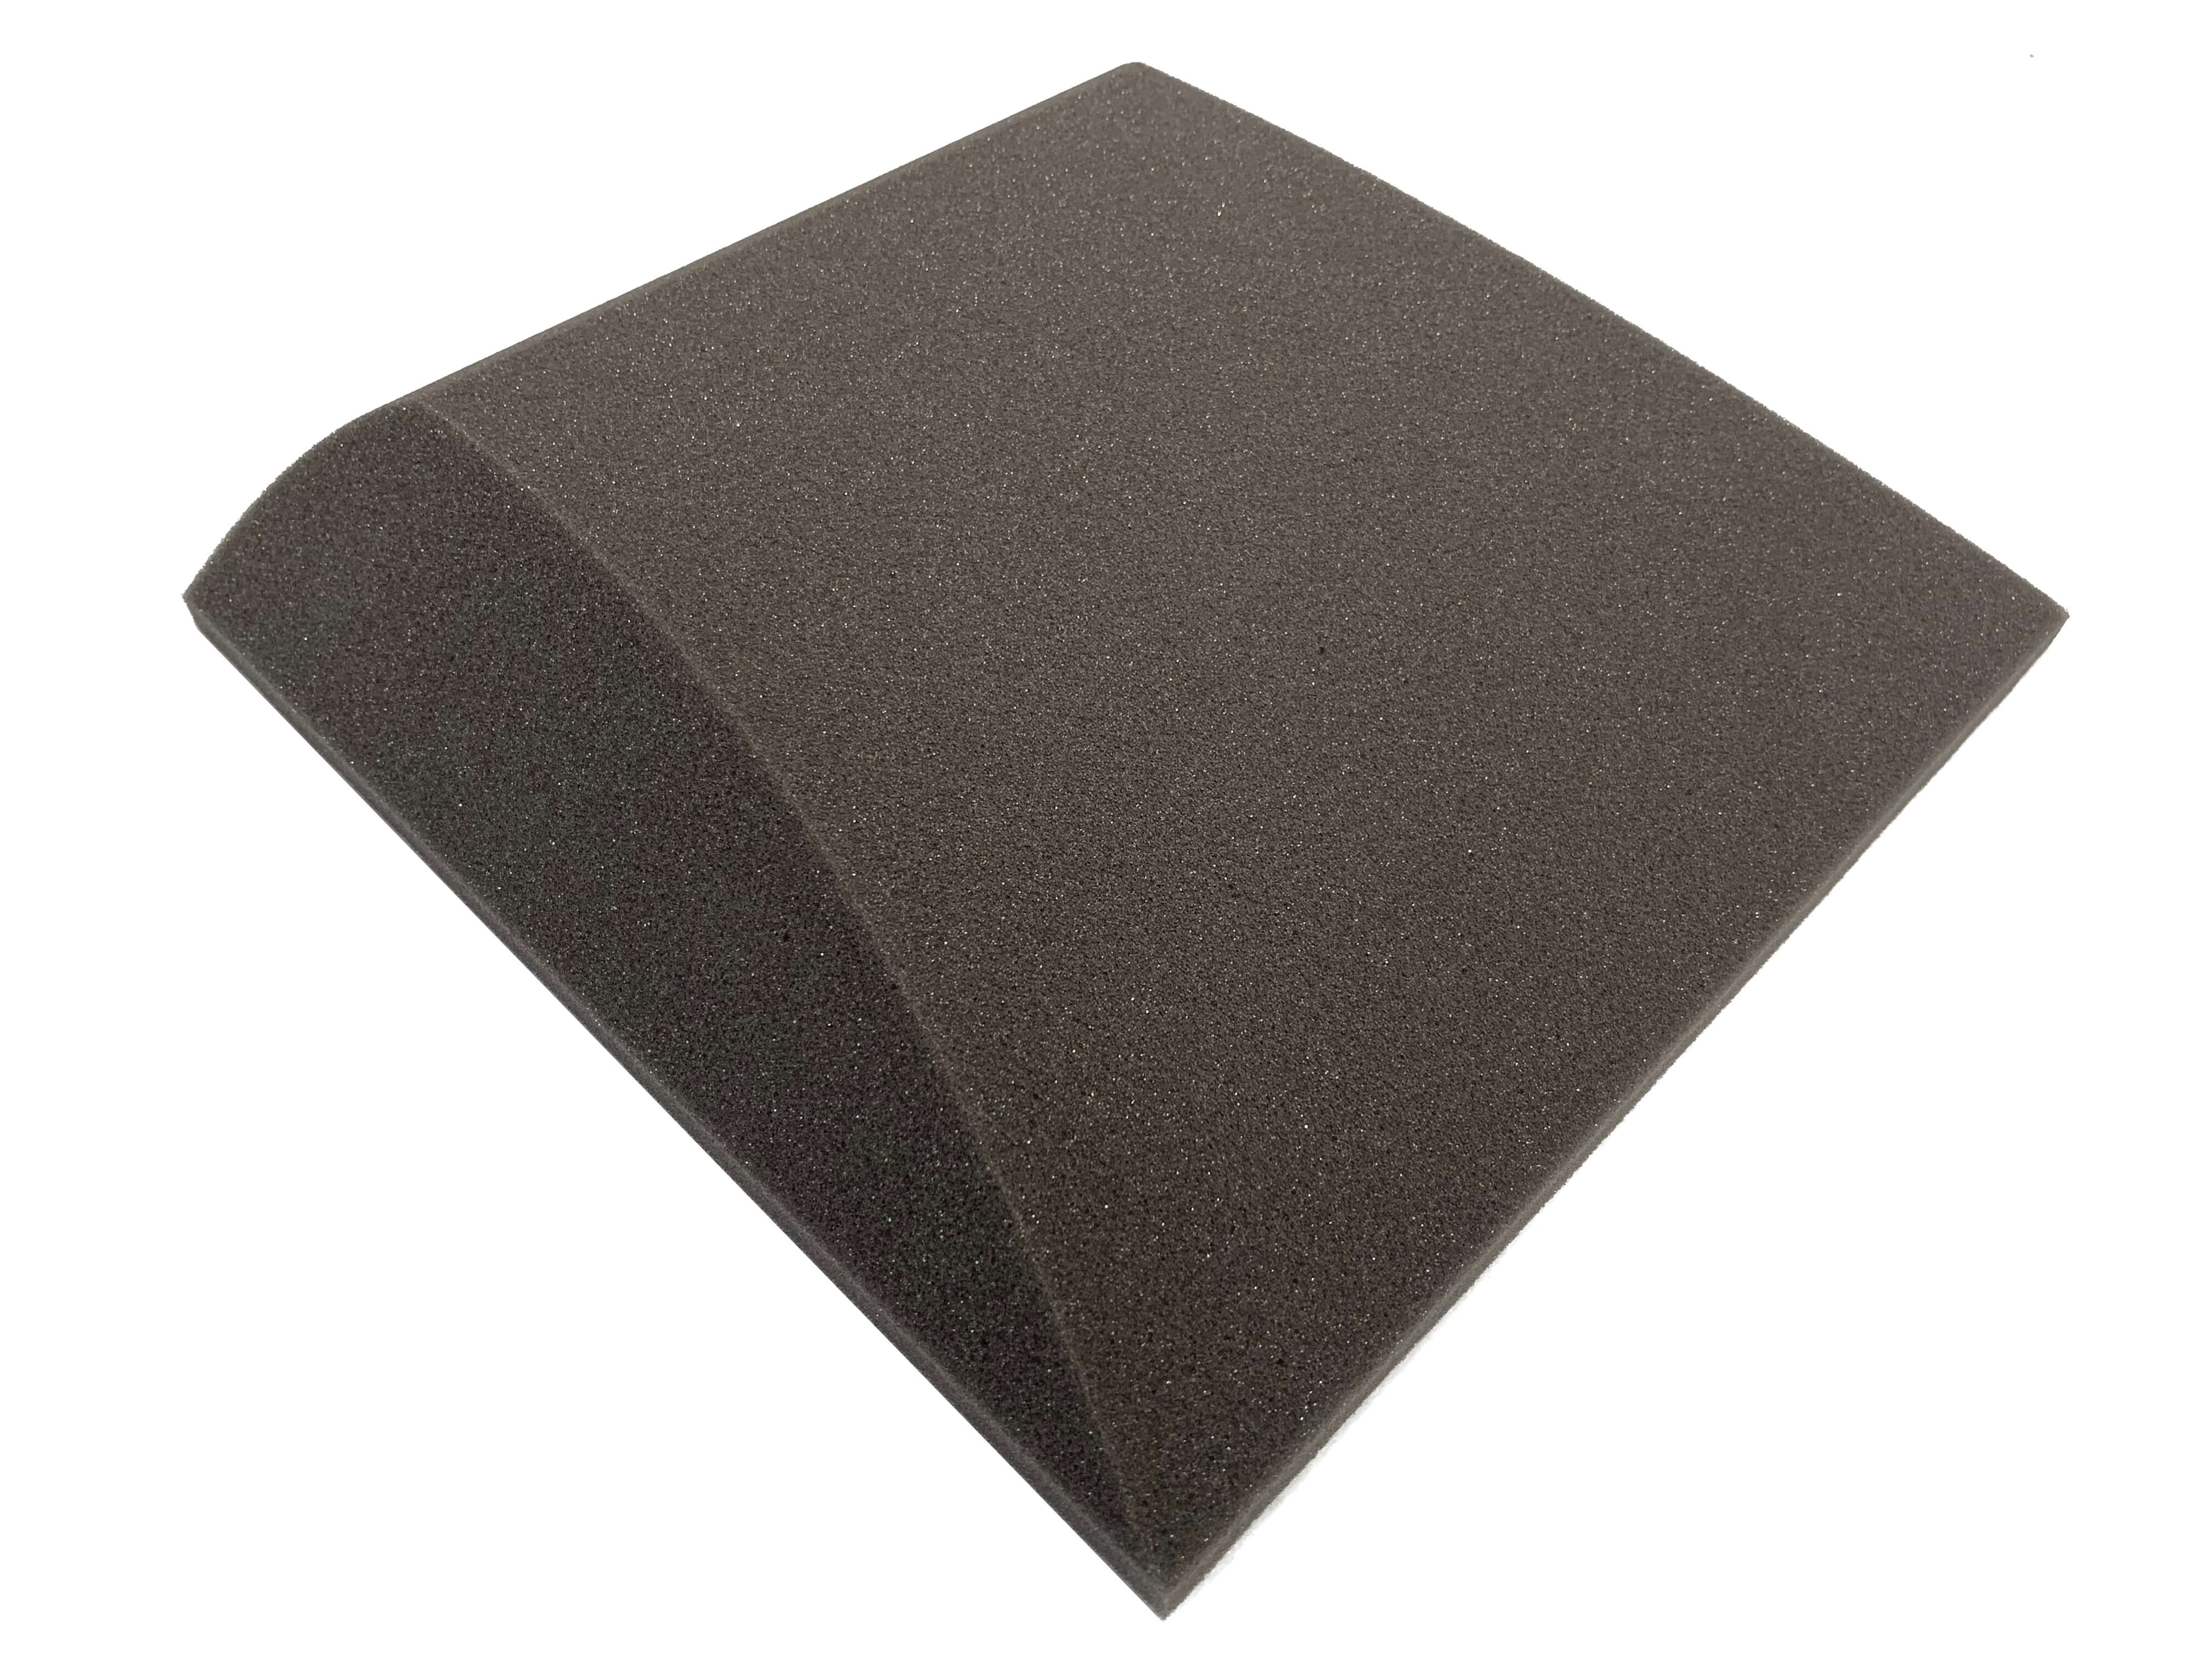 AeroFoil 12" Acoustic Studio Foam Tile Pack - 12 Tiles, 1.1qm Coverage